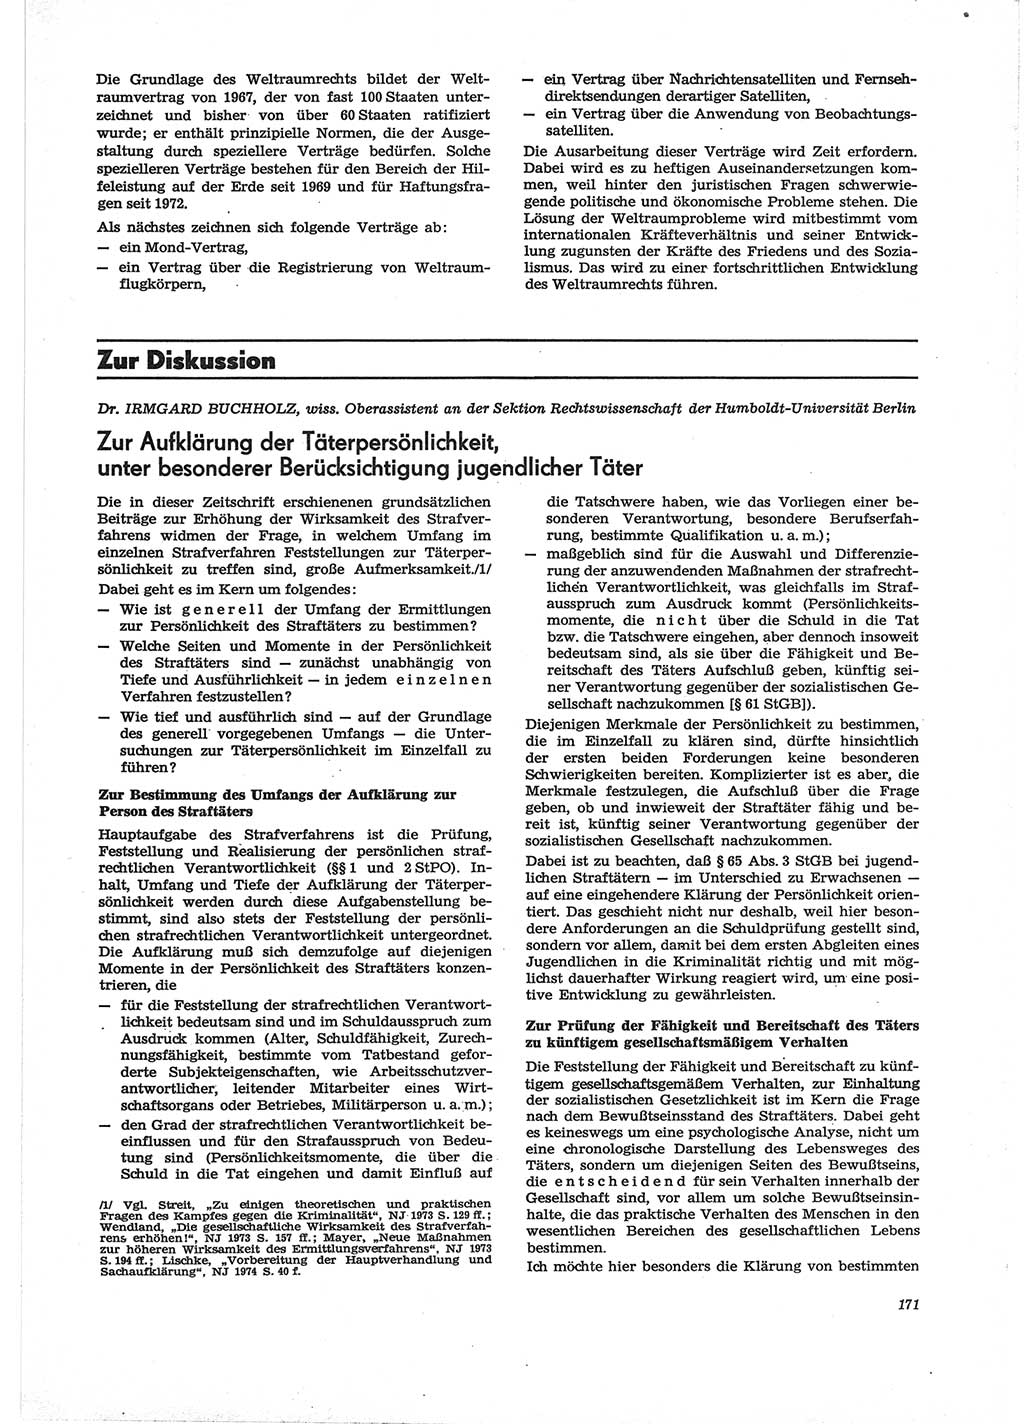 Neue Justiz (NJ), Zeitschrift für Recht und Rechtswissenschaft [Deutsche Demokratische Republik (DDR)], 28. Jahrgang 1974, Seite 171 (NJ DDR 1974, S. 171)